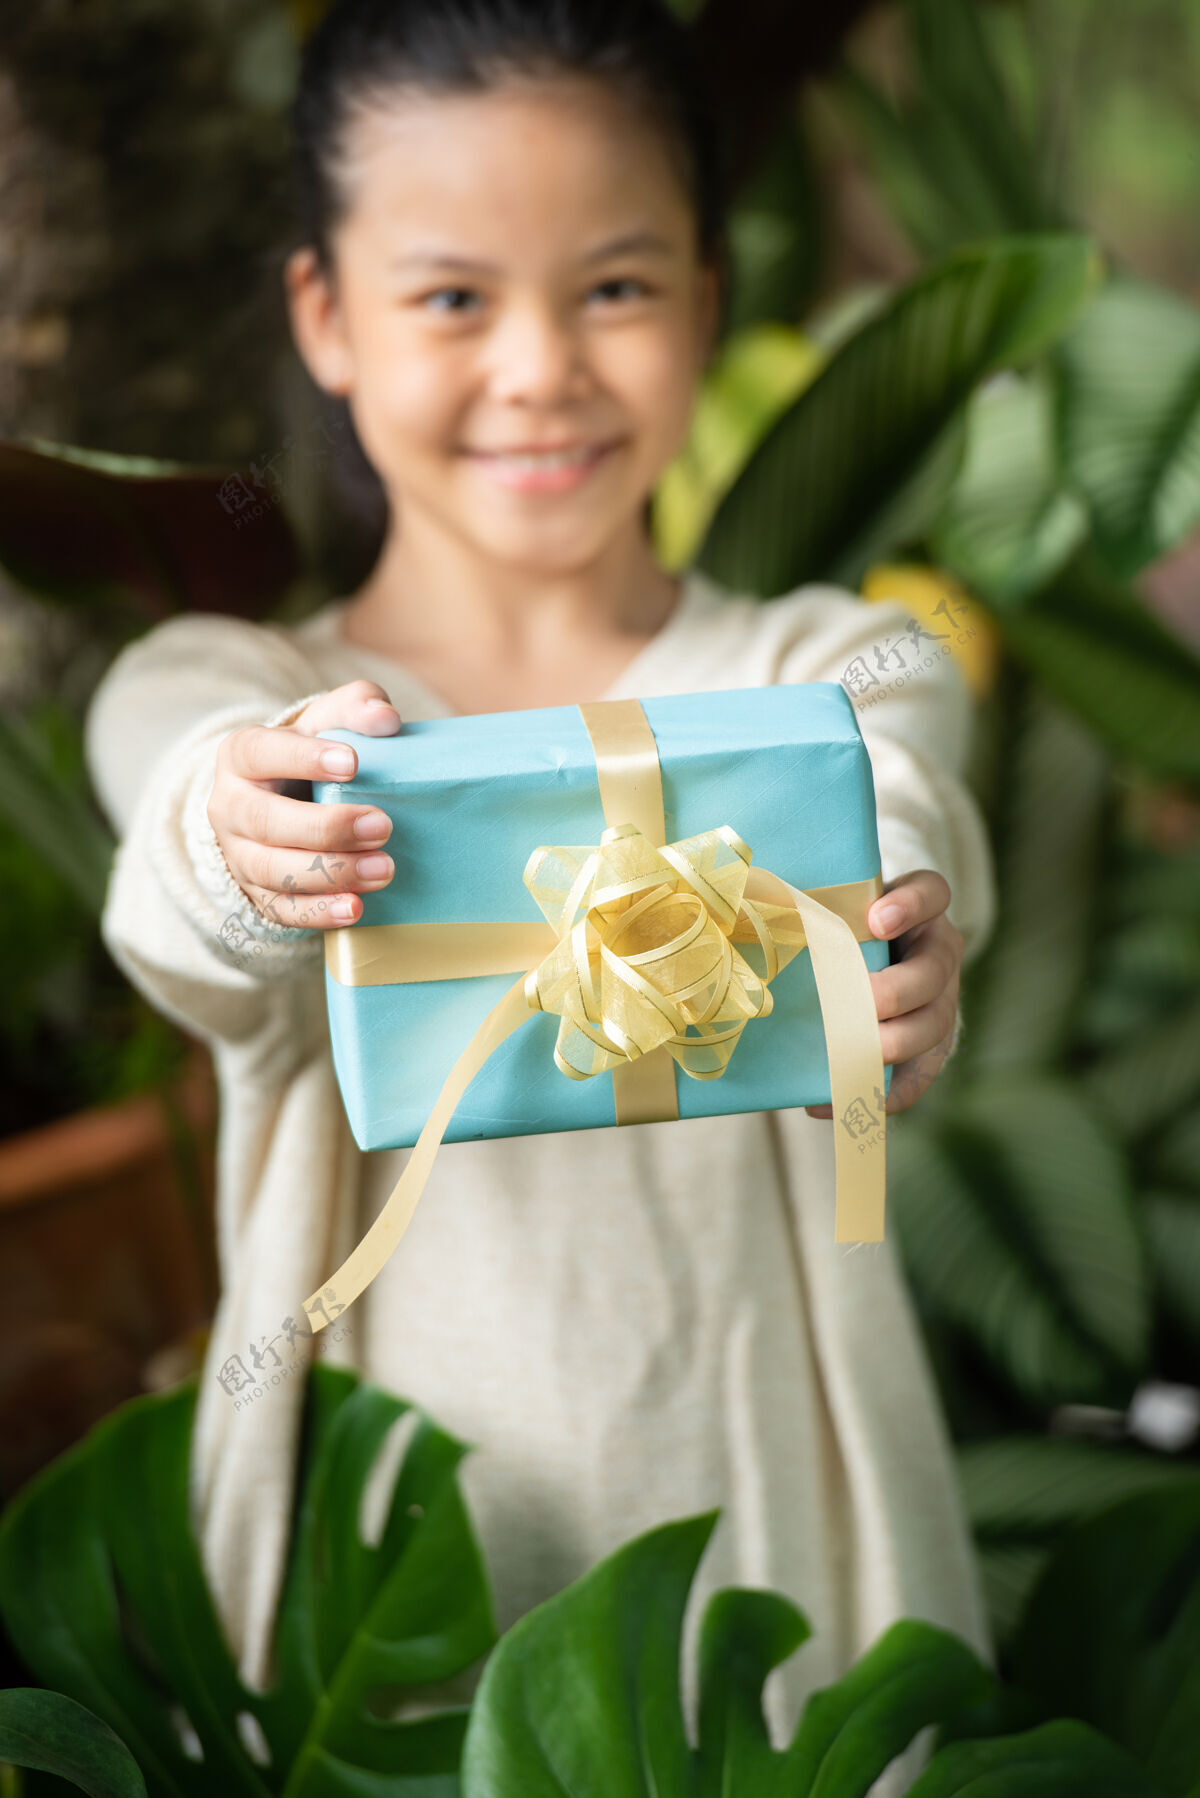 工艺圣诞画像快乐微笑的小女孩和礼品盒附近的绿色树枝树木头树叶盒子